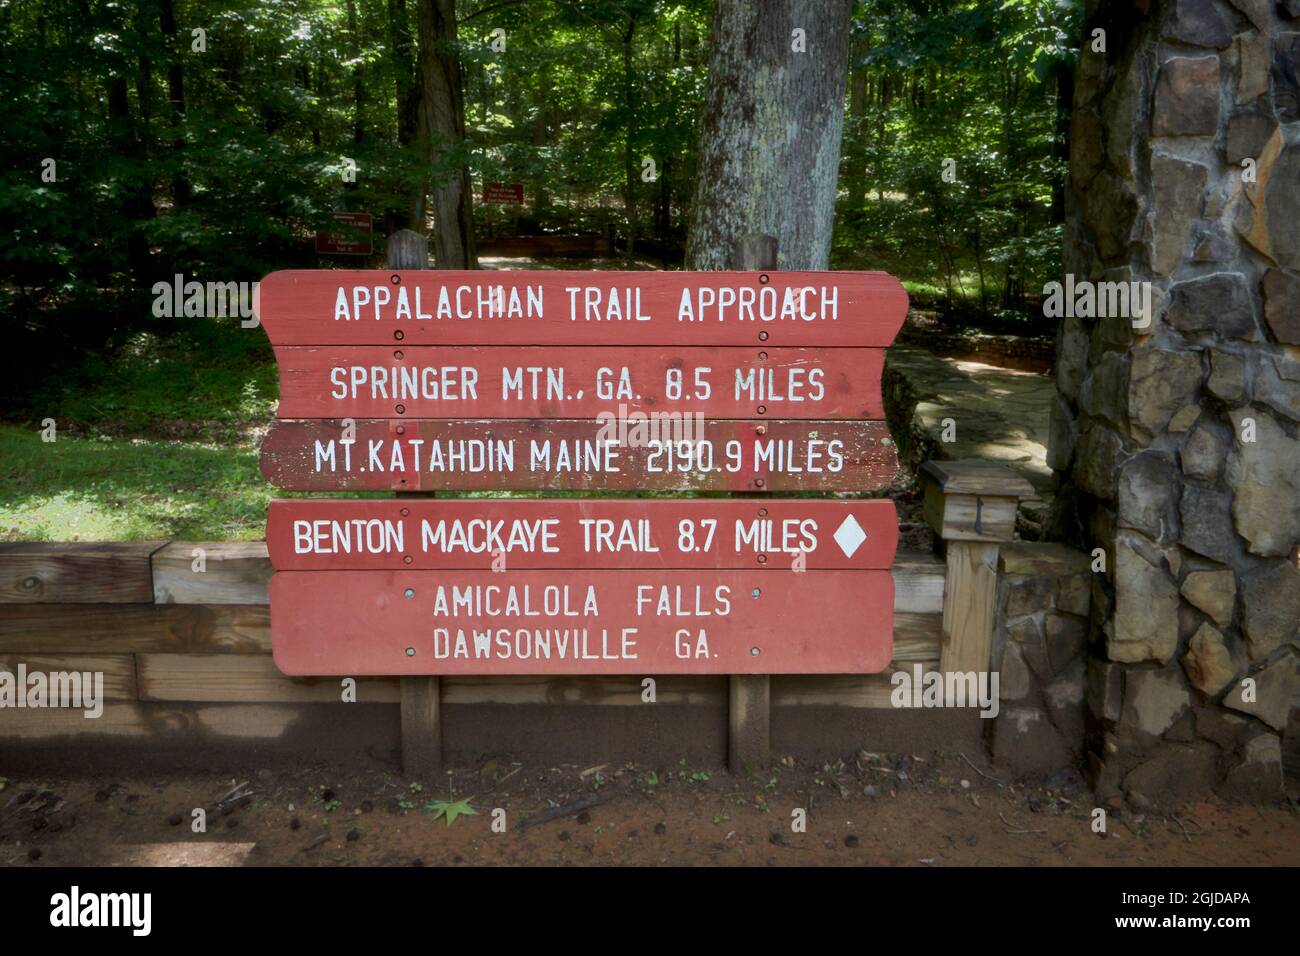 Estados Unidos, Georgia, Dawsonville, Parque Estatal Amicalola. El sendero Appalachian es un sendero escénico nacional de 2.200 millas desde Springer Mountain, Georgia, hasta el Monte Foto de stock